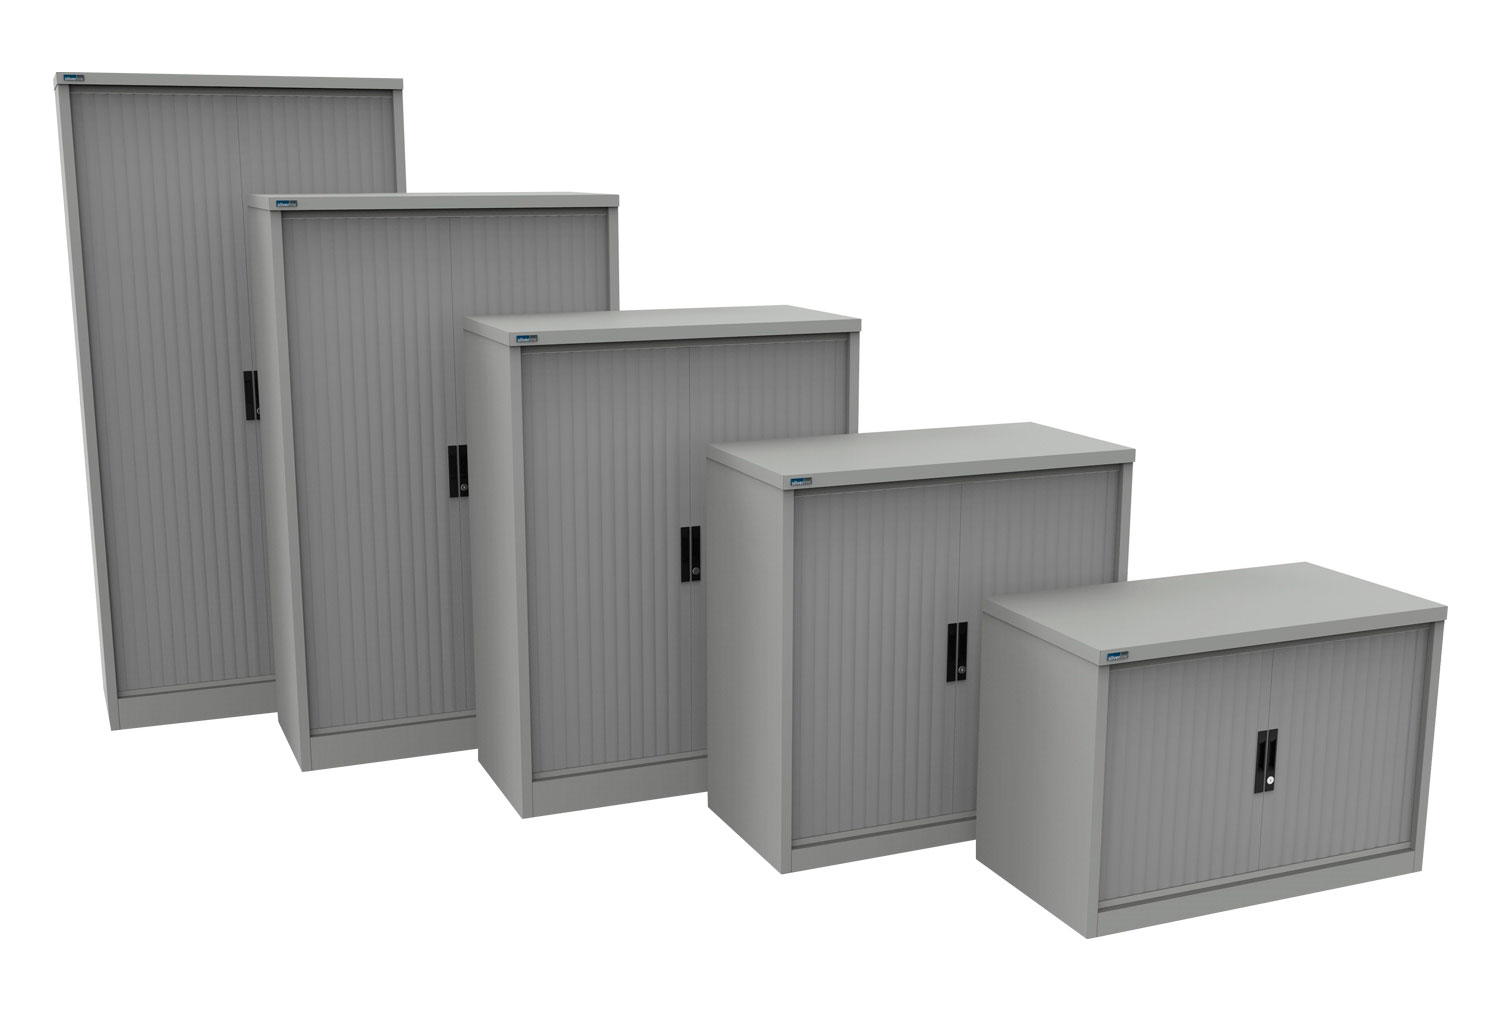 Silverline Kontrax Side Tambour Door Office Cupboards 100cm Wide, 100wx51dx69h (cm), Light Grey Body, Light Grey